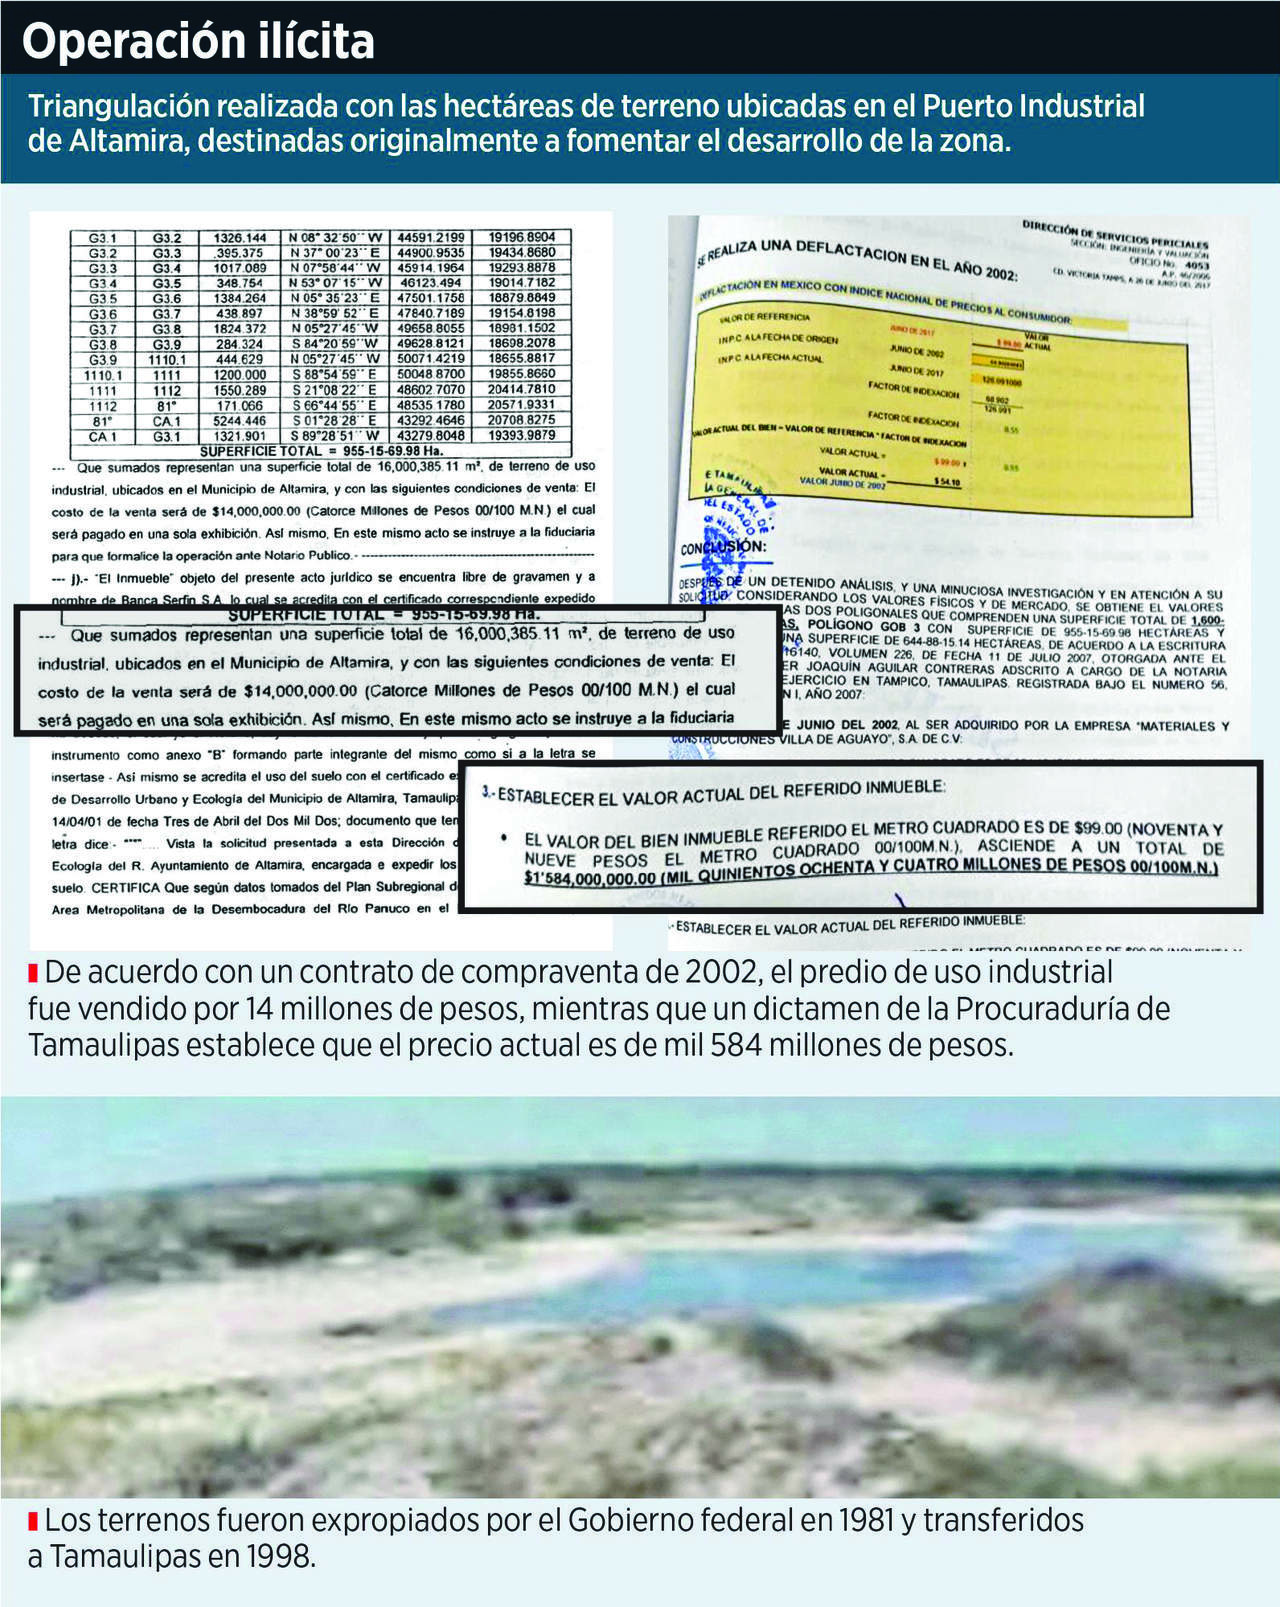 Los terrenos en cuestión, originalmente fueron expropiados por el Gobierno Federal en 1981 y transferidos a Tamaulipas en 1998. (AGENCIA REFORMA)